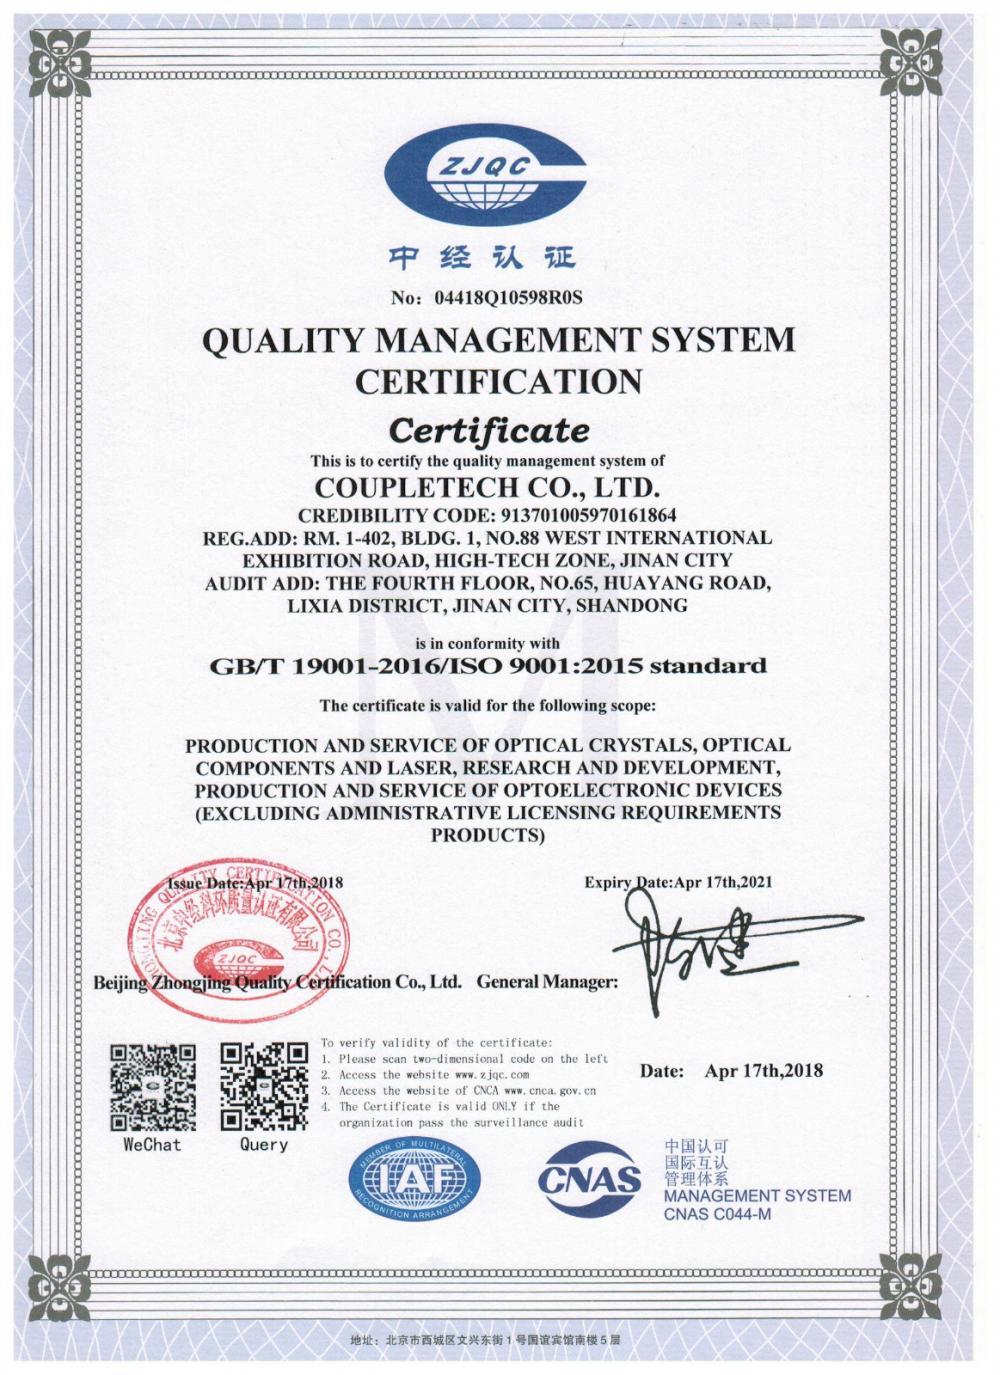 Coupletech Co., Ltd. is geslaagd voor de certificering: een modulaire beugel voor actieve temperatuurregelingskristallen.